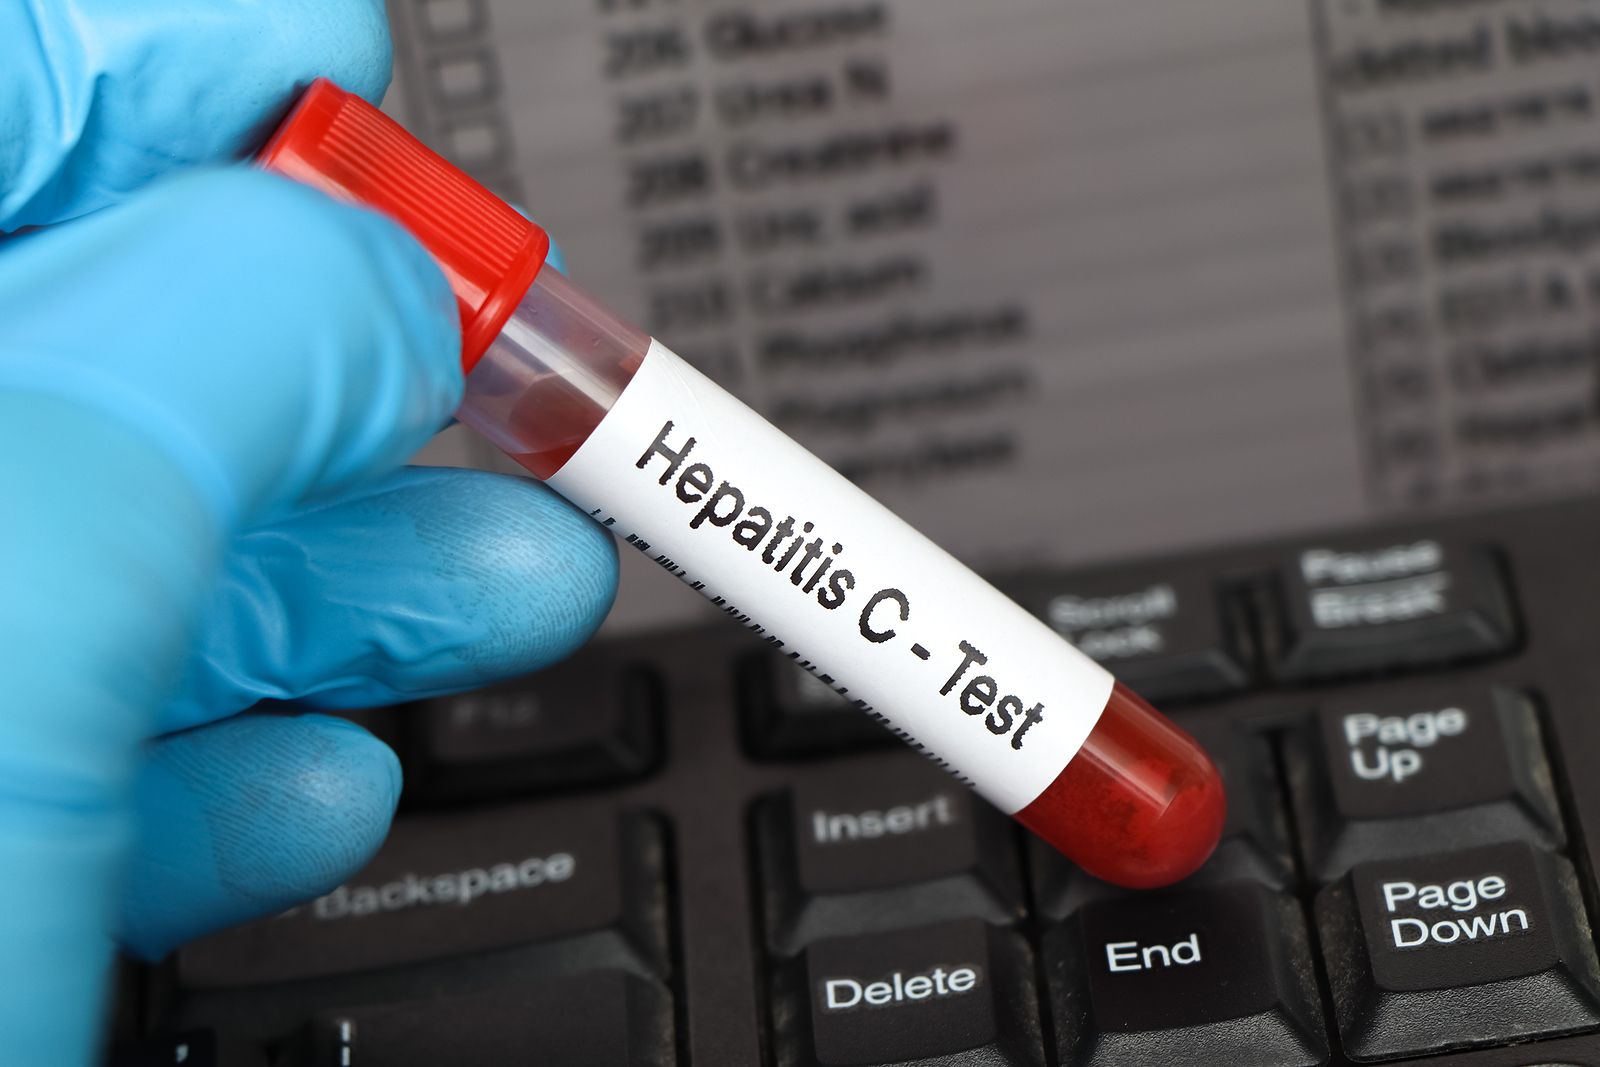 Descubren una prueba más sencilla, rápida y barata para detectar la hepatitis C